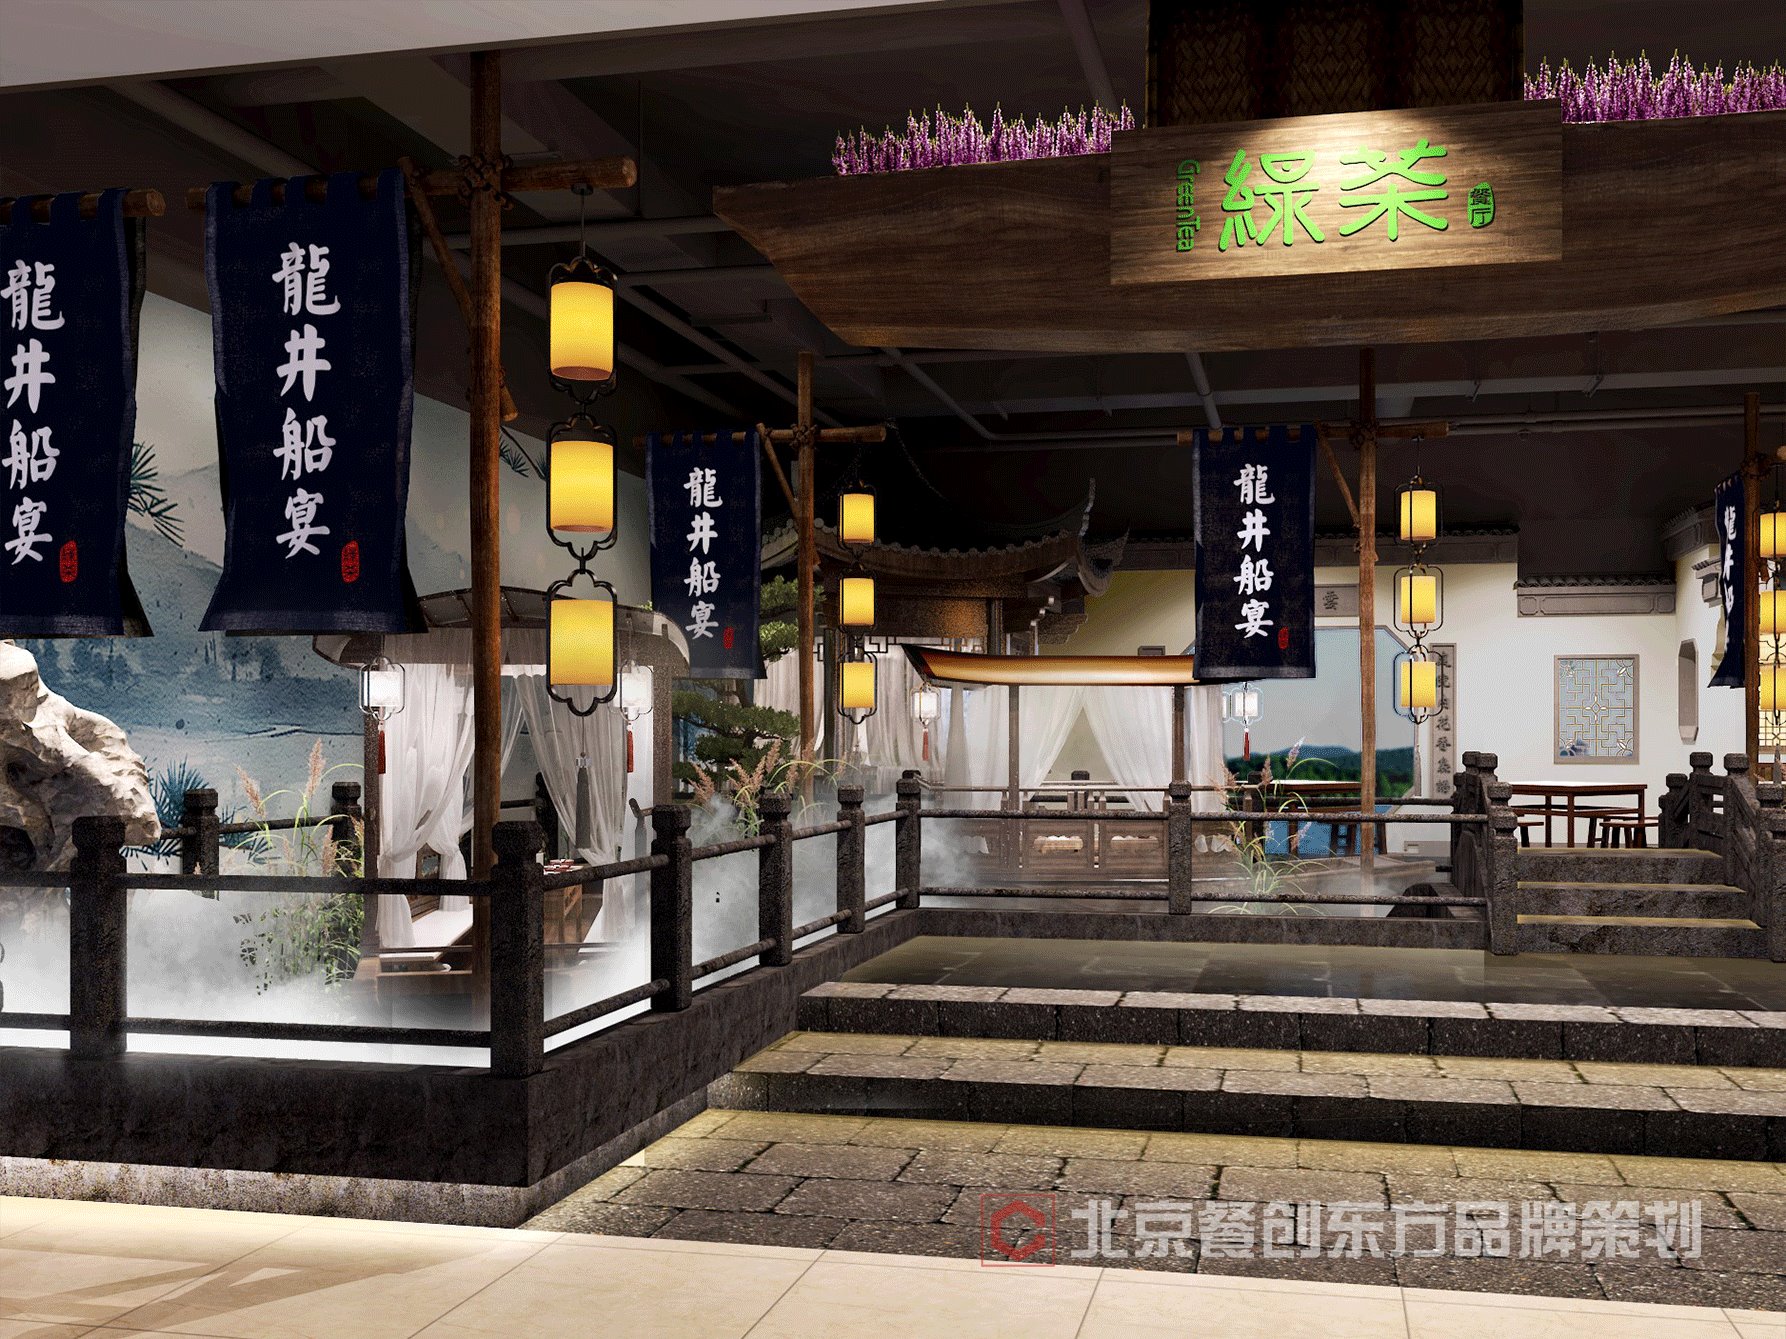 北京美食探店： “龙井船宴”主题的绿茶餐厅